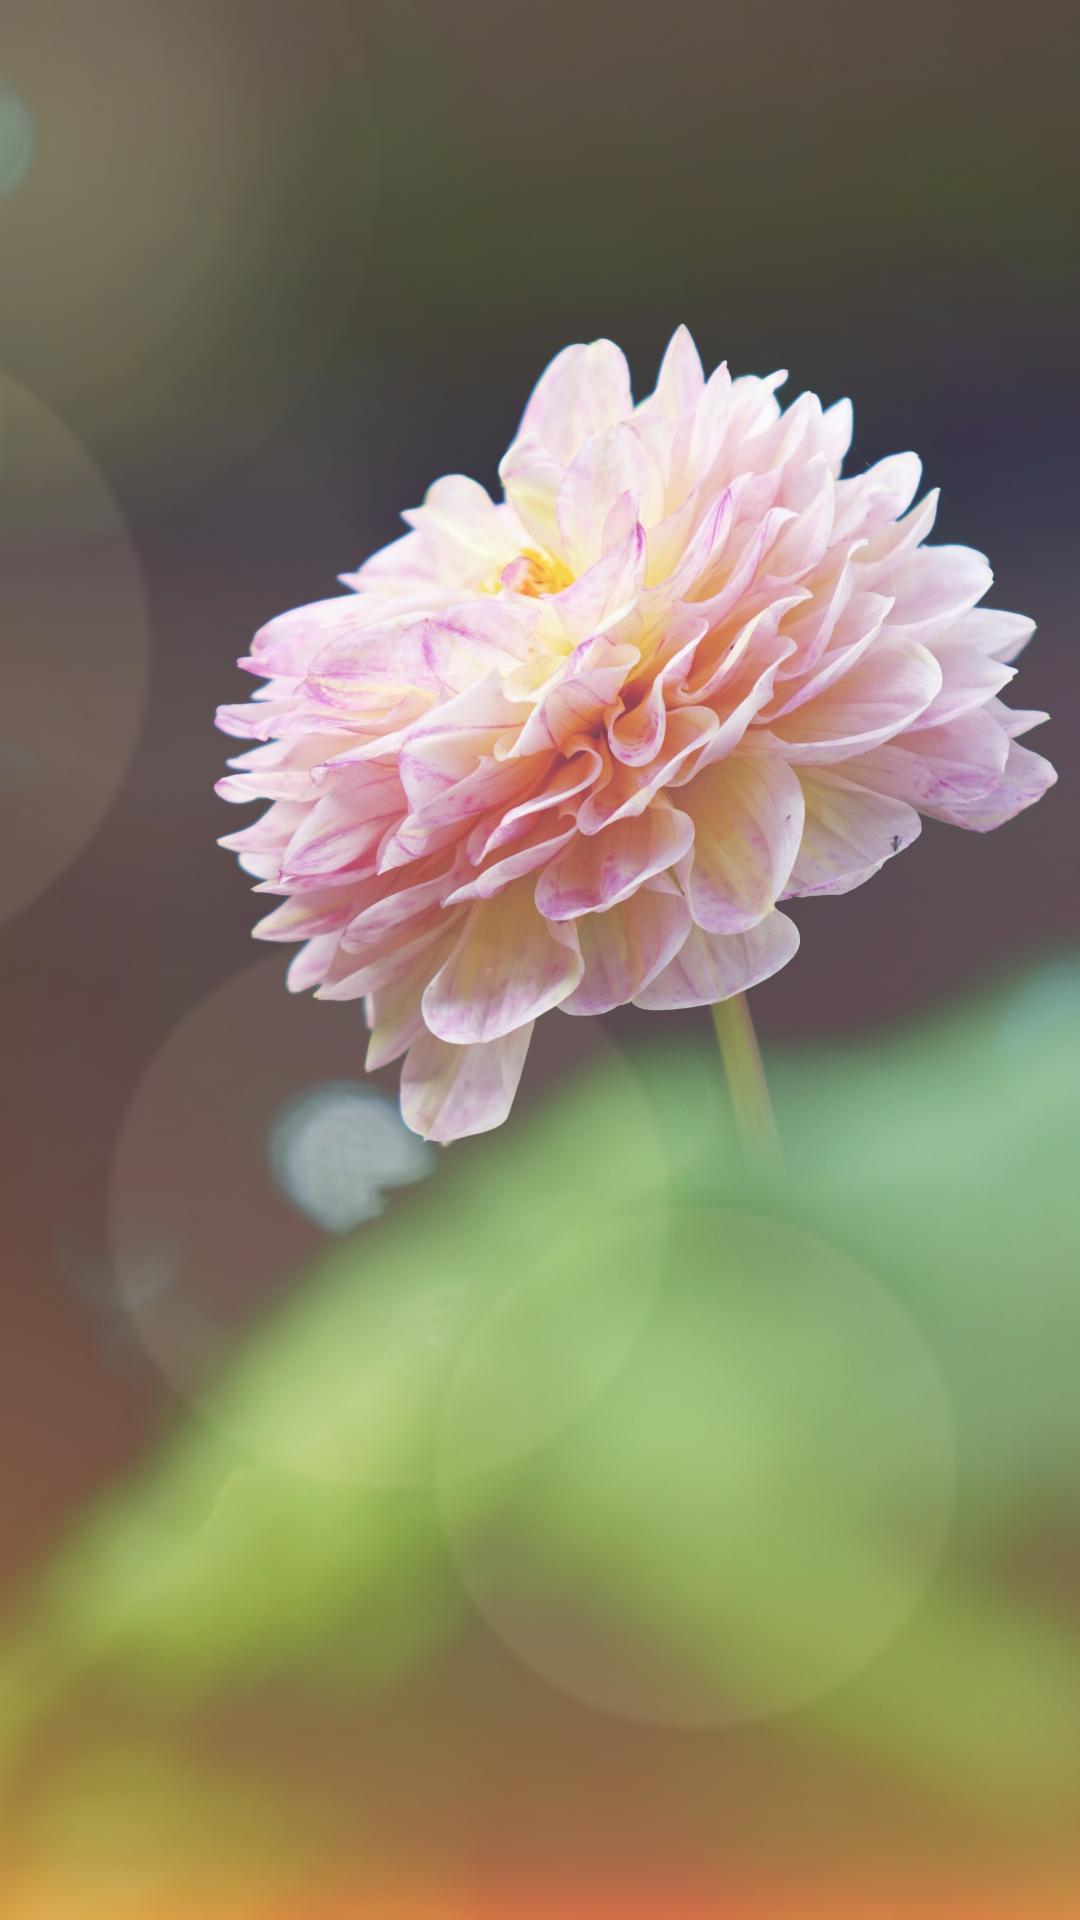 Sunlit Pink Flower Iphone Wallpaper - Good Evening Beautiful Flowers - HD Wallpaper 